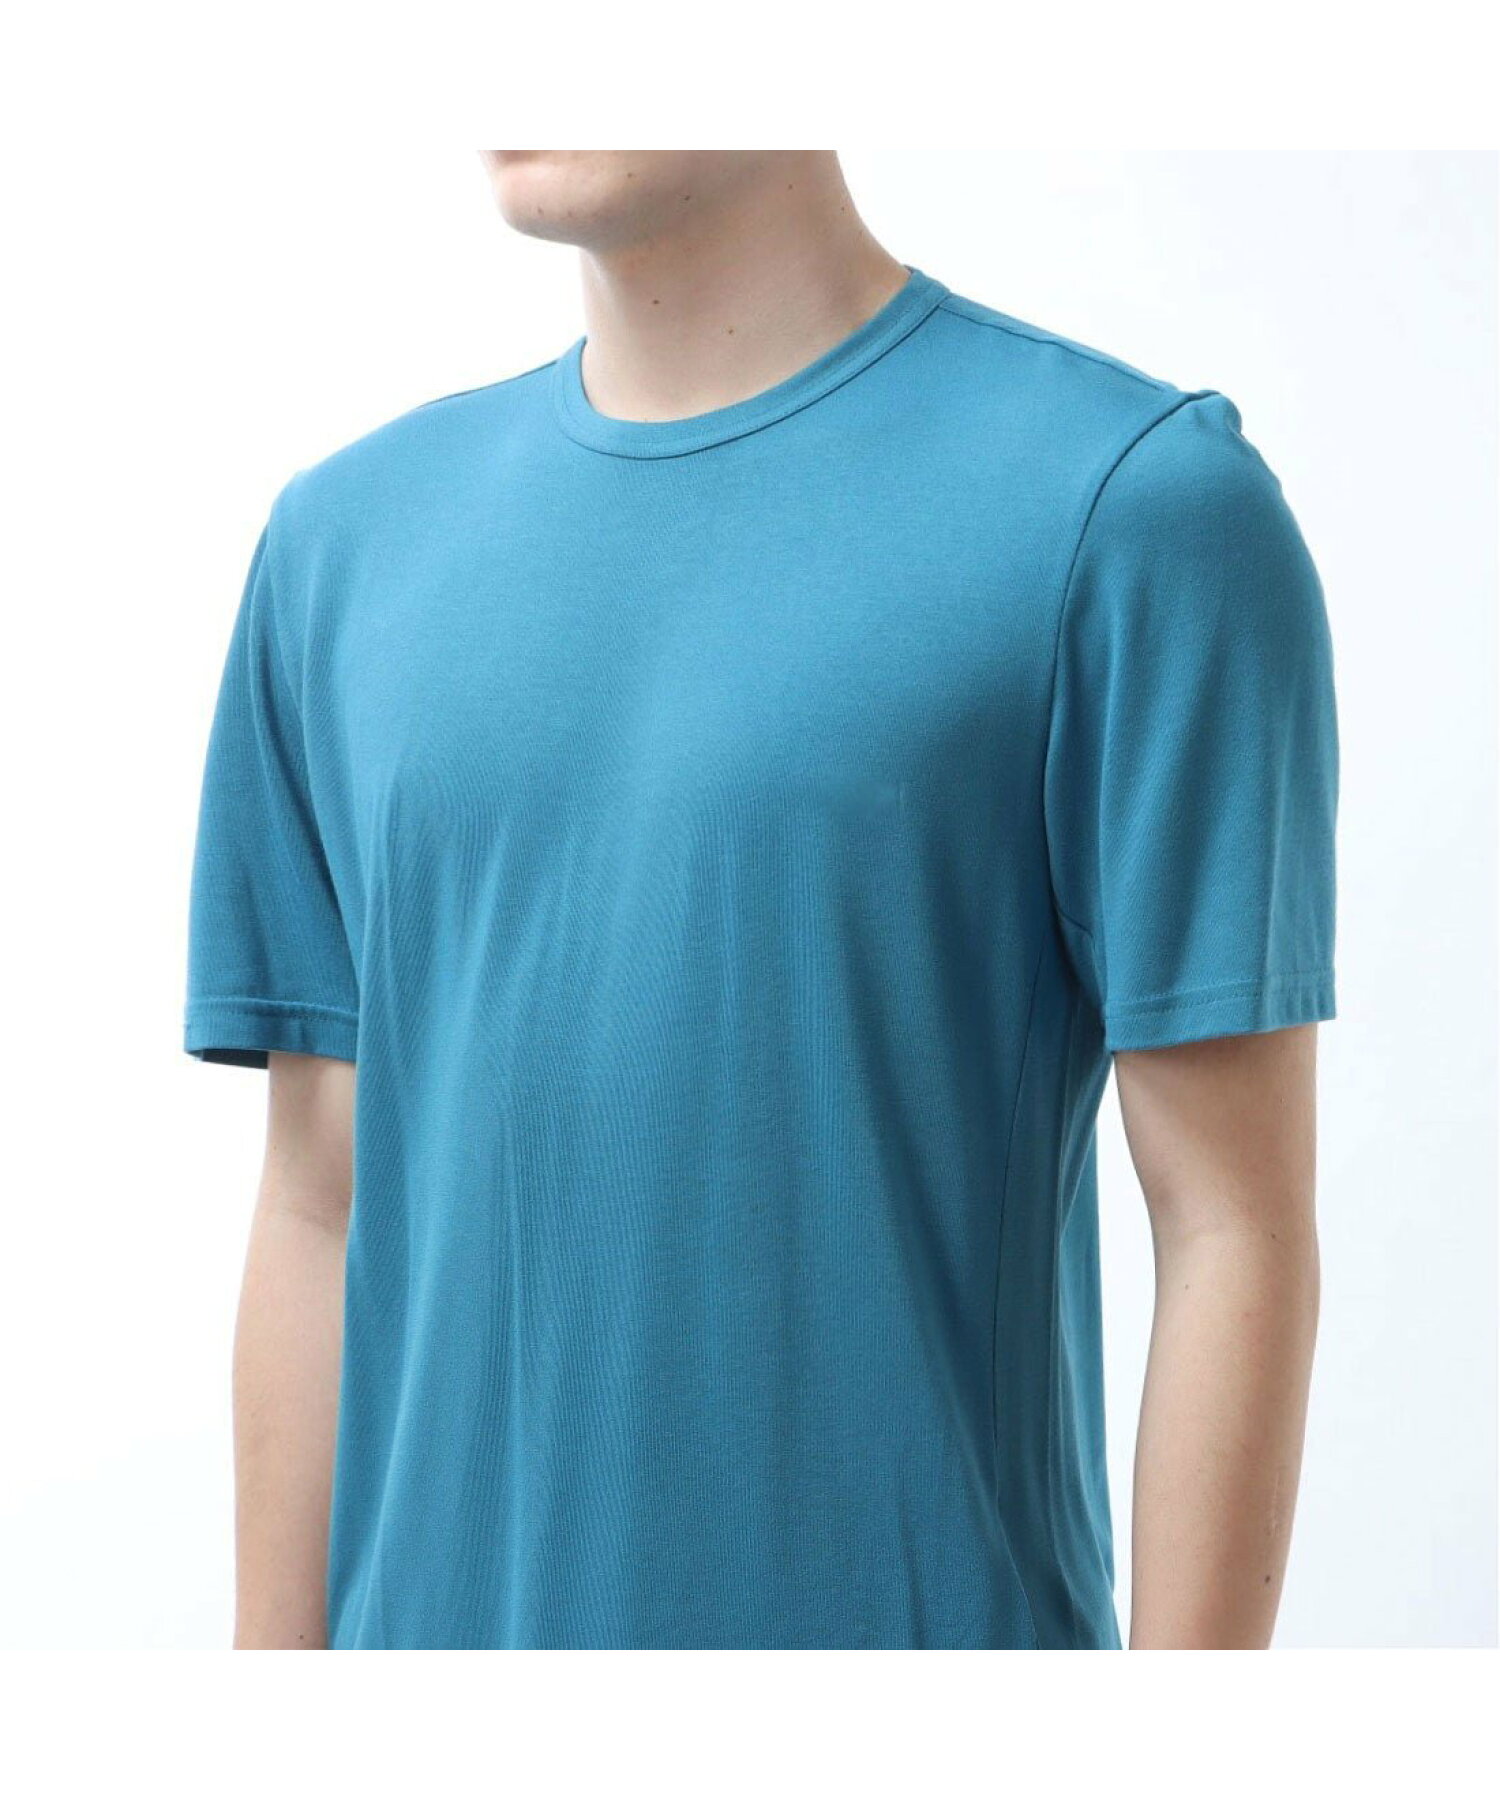 アクティブチル+ドリームブレンド Tシャツ / Activchill+DREAMBLEND T-Shirt